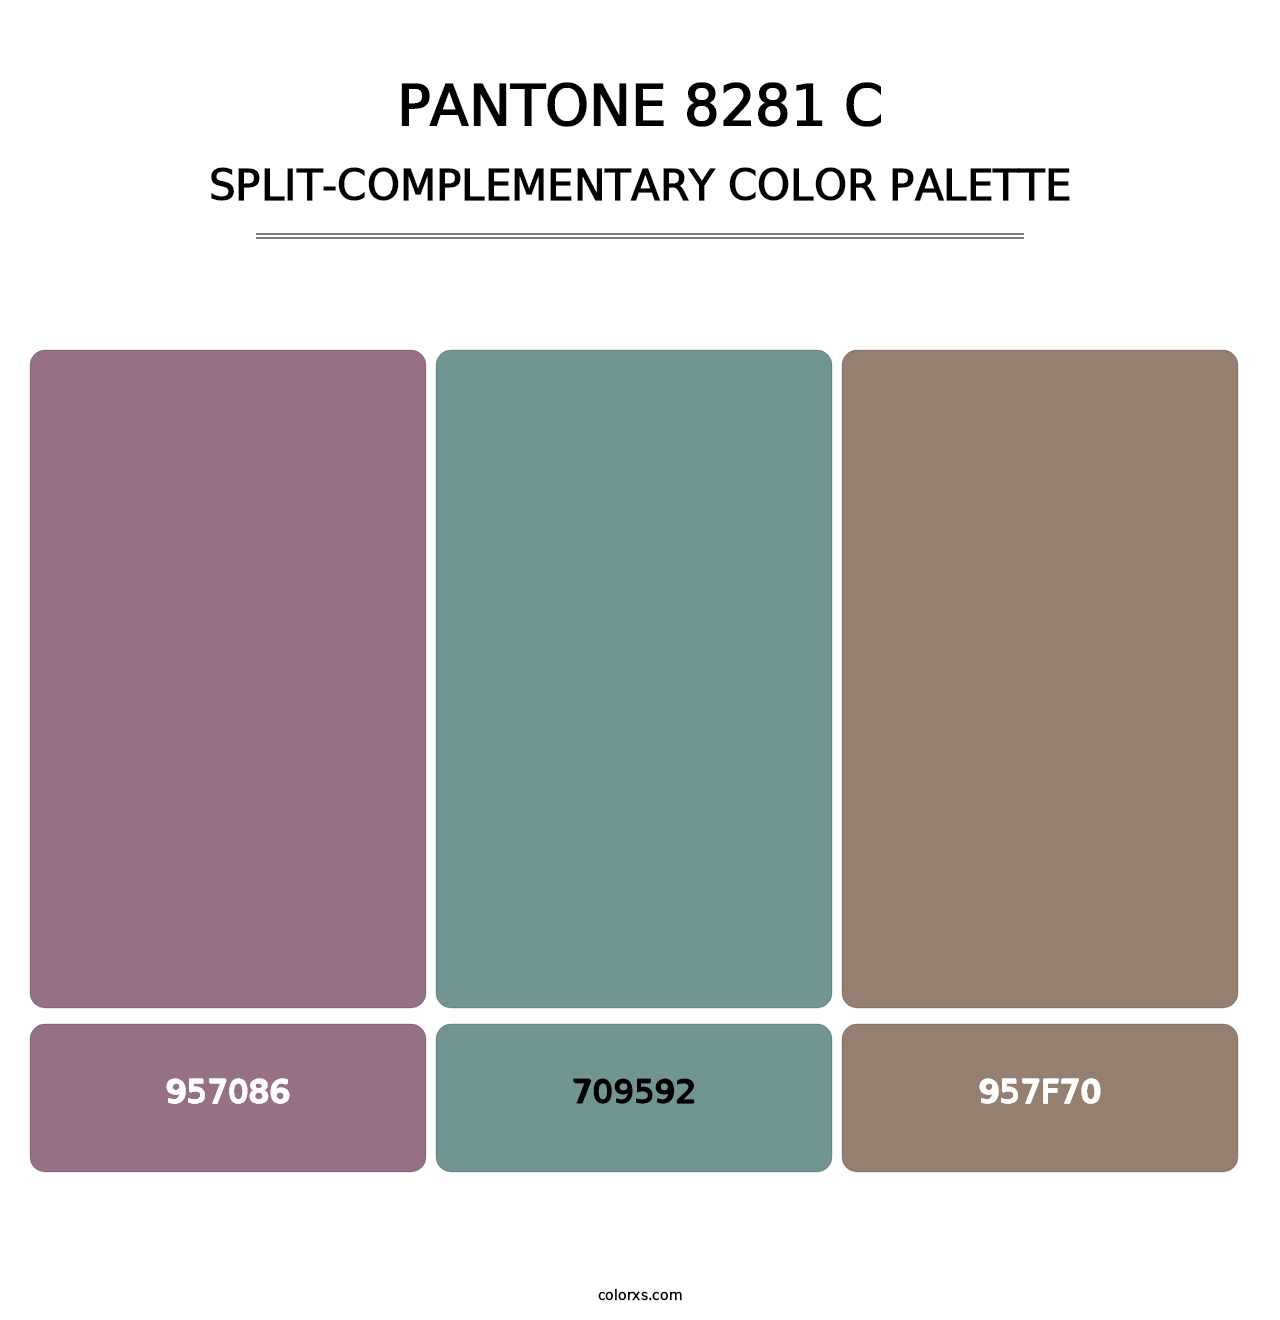 PANTONE 8281 C - Split-Complementary Color Palette